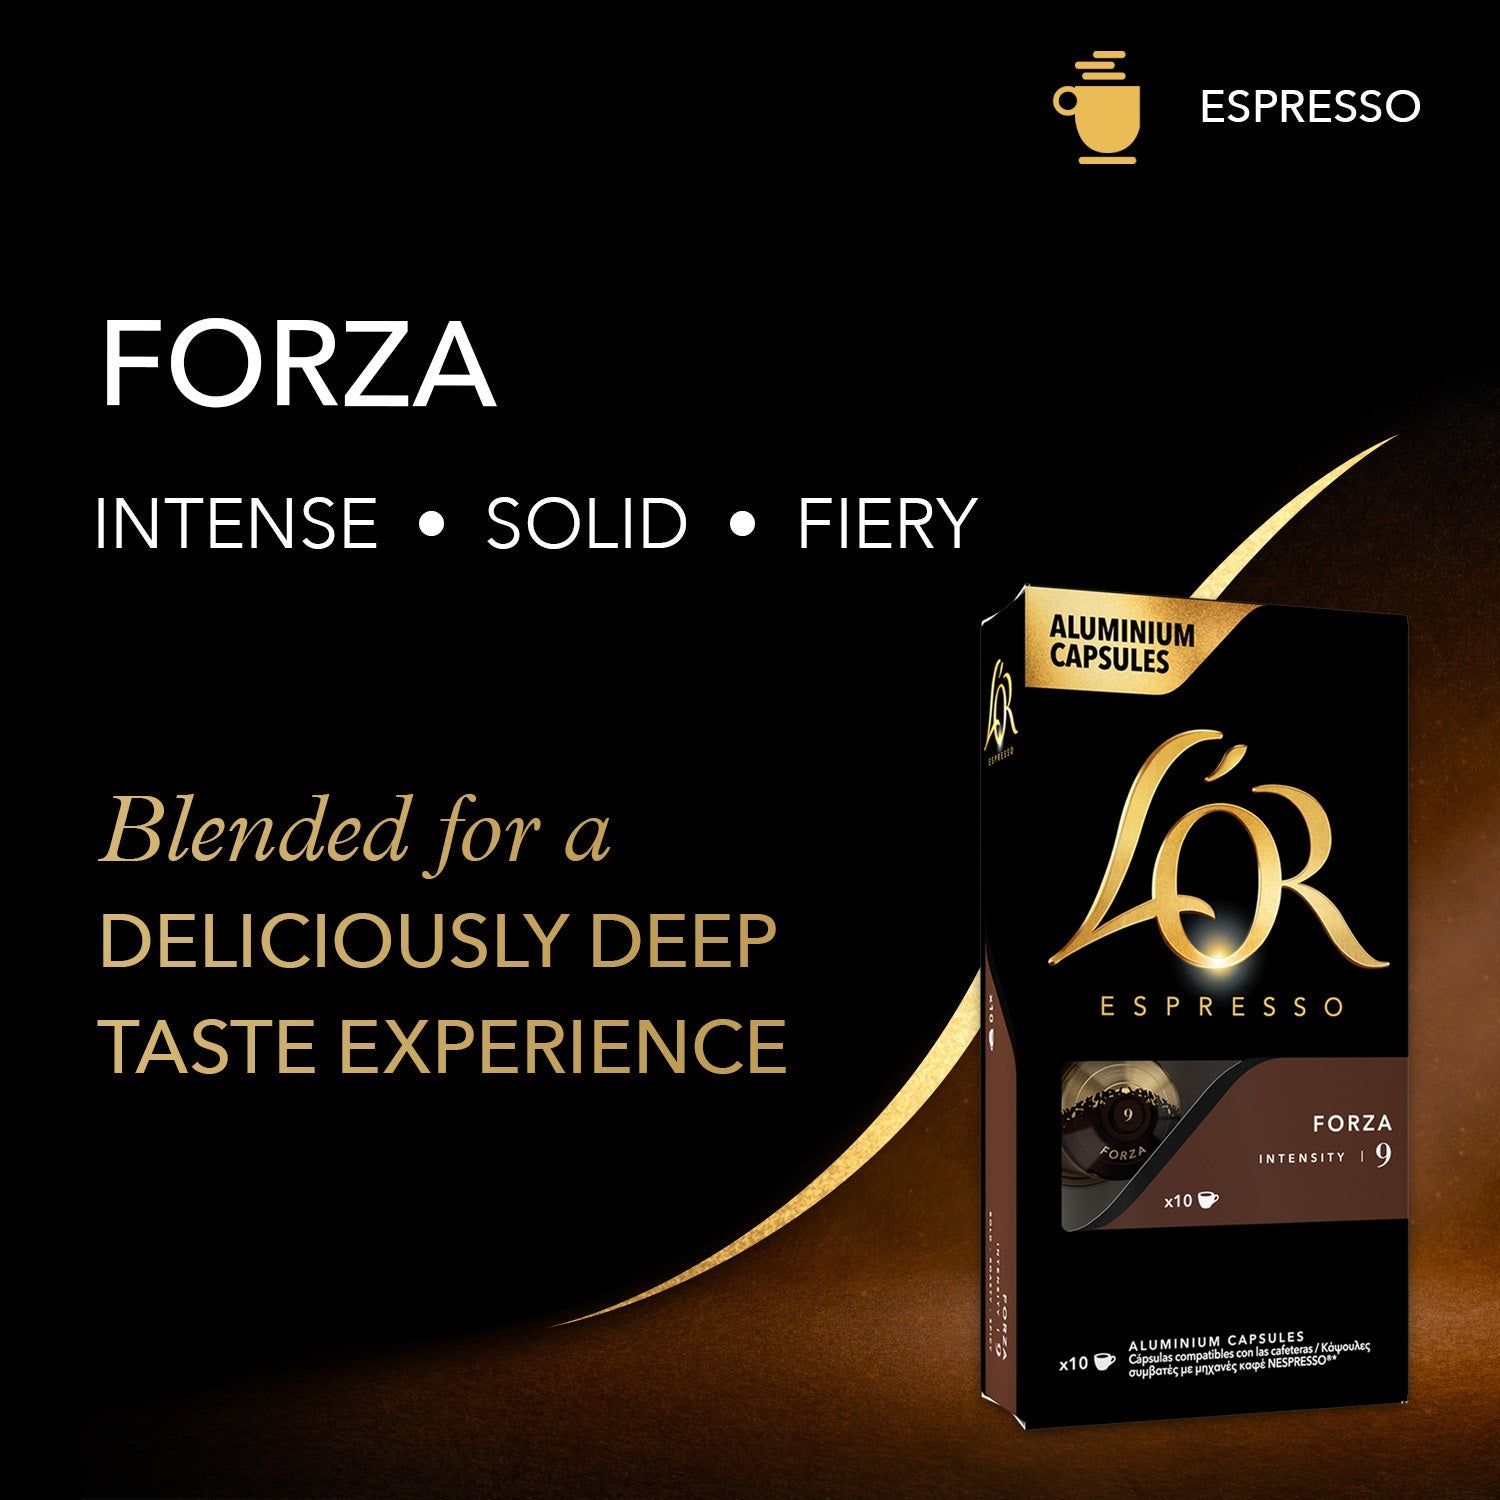 Forza Espresso